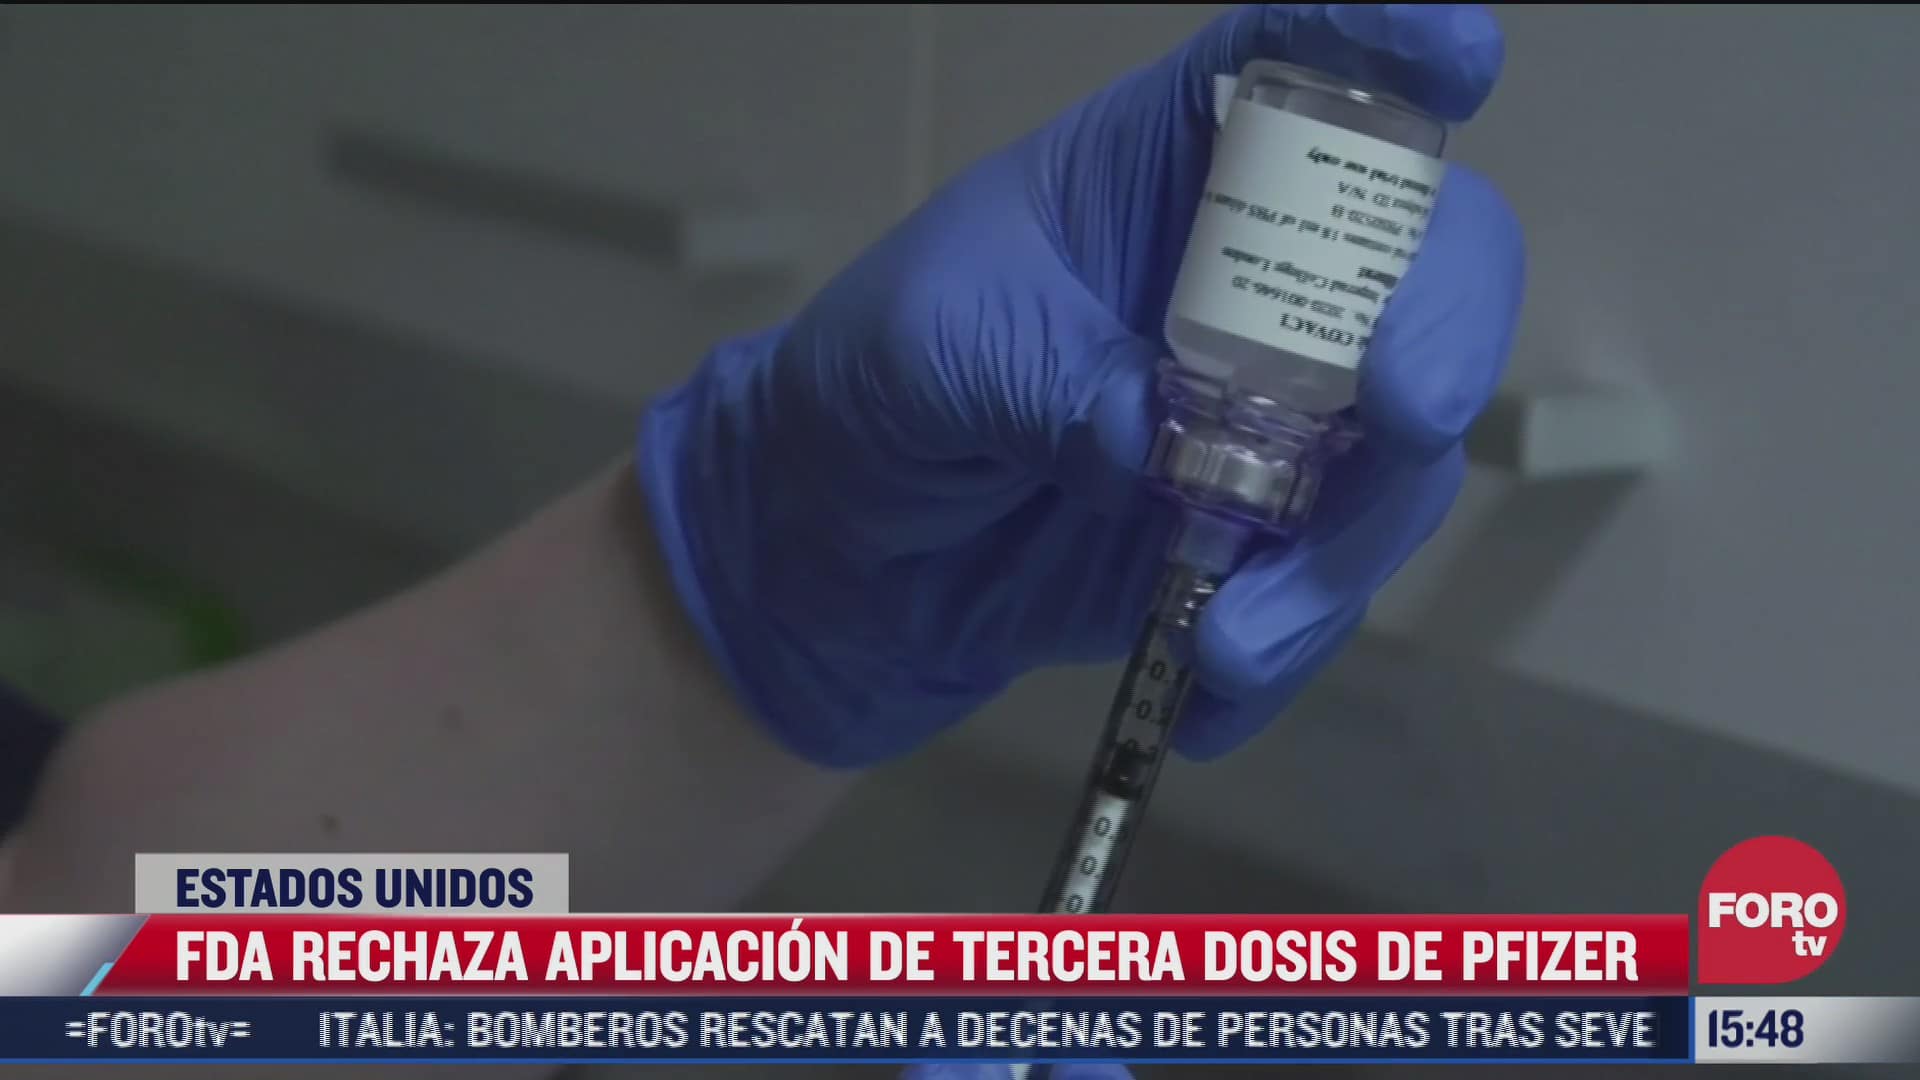 fda rechaza aplicacion de tercera dosis de vacuna covid para poblacion en eeuu